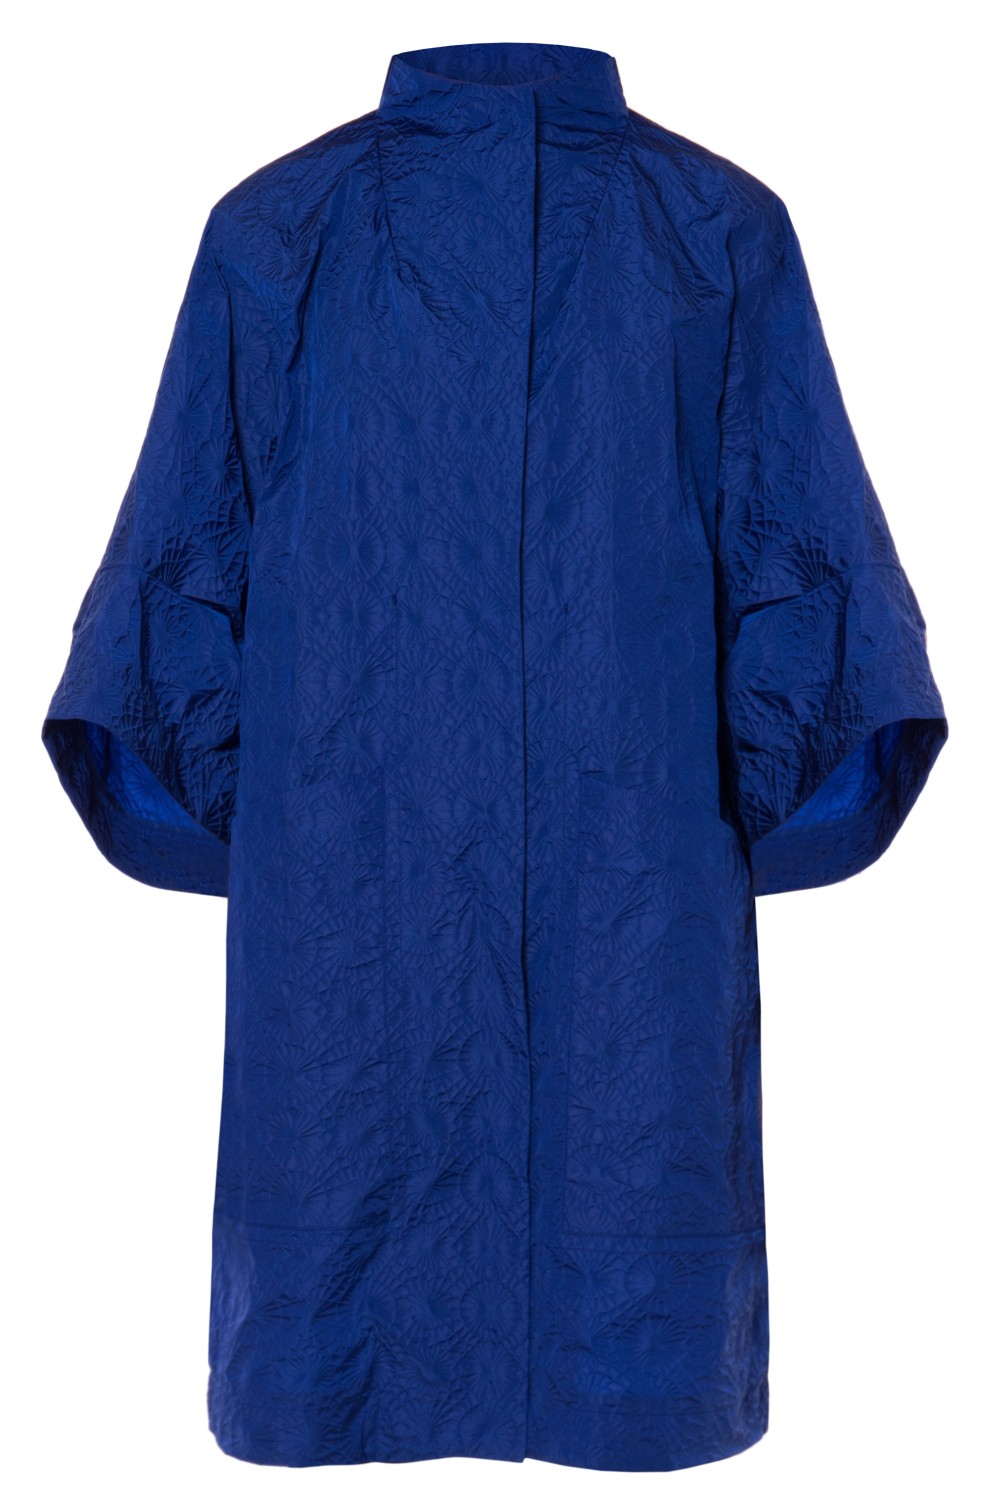 shop Ahirain Sales Cappotti: Cappotti Ahirain, modello kimono, manica 3/4, media lunghezza, chiusura davanti con bottoni automatici, tasche laterali, color blu elettrico.

Composizione: 100% poliammide. number 2099